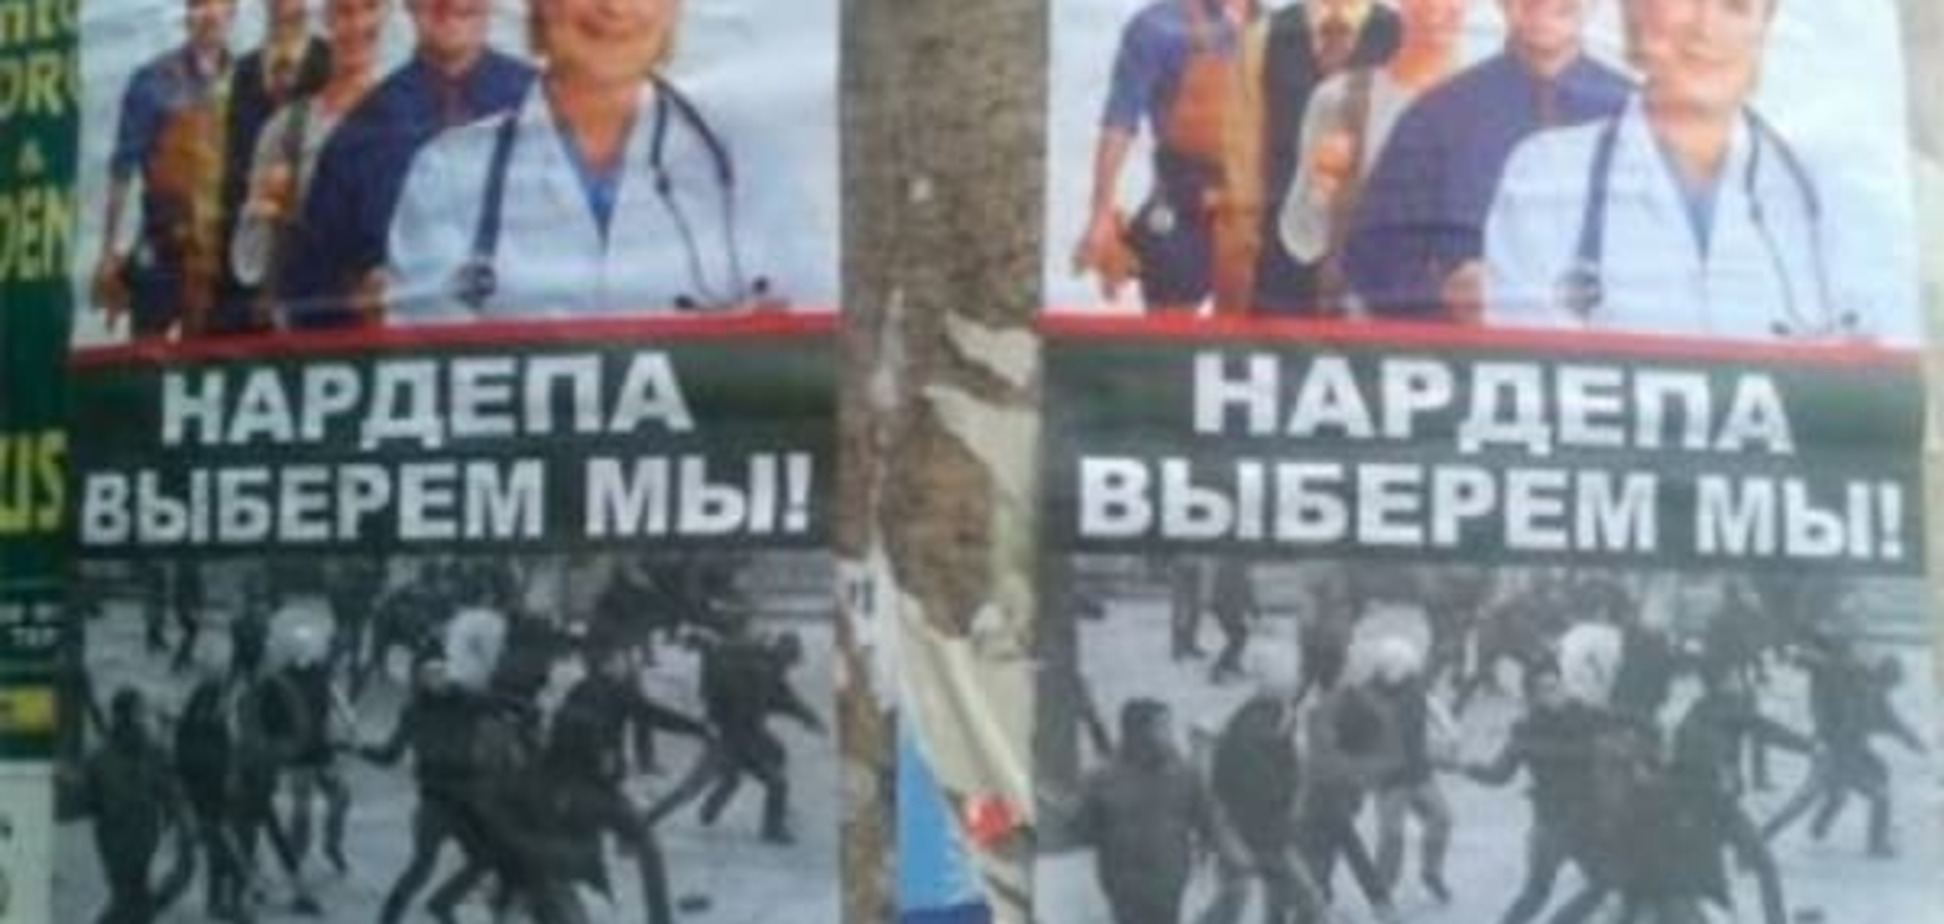 'Нардепа выберем мы': в Херсоне активизировались антимайдановцы